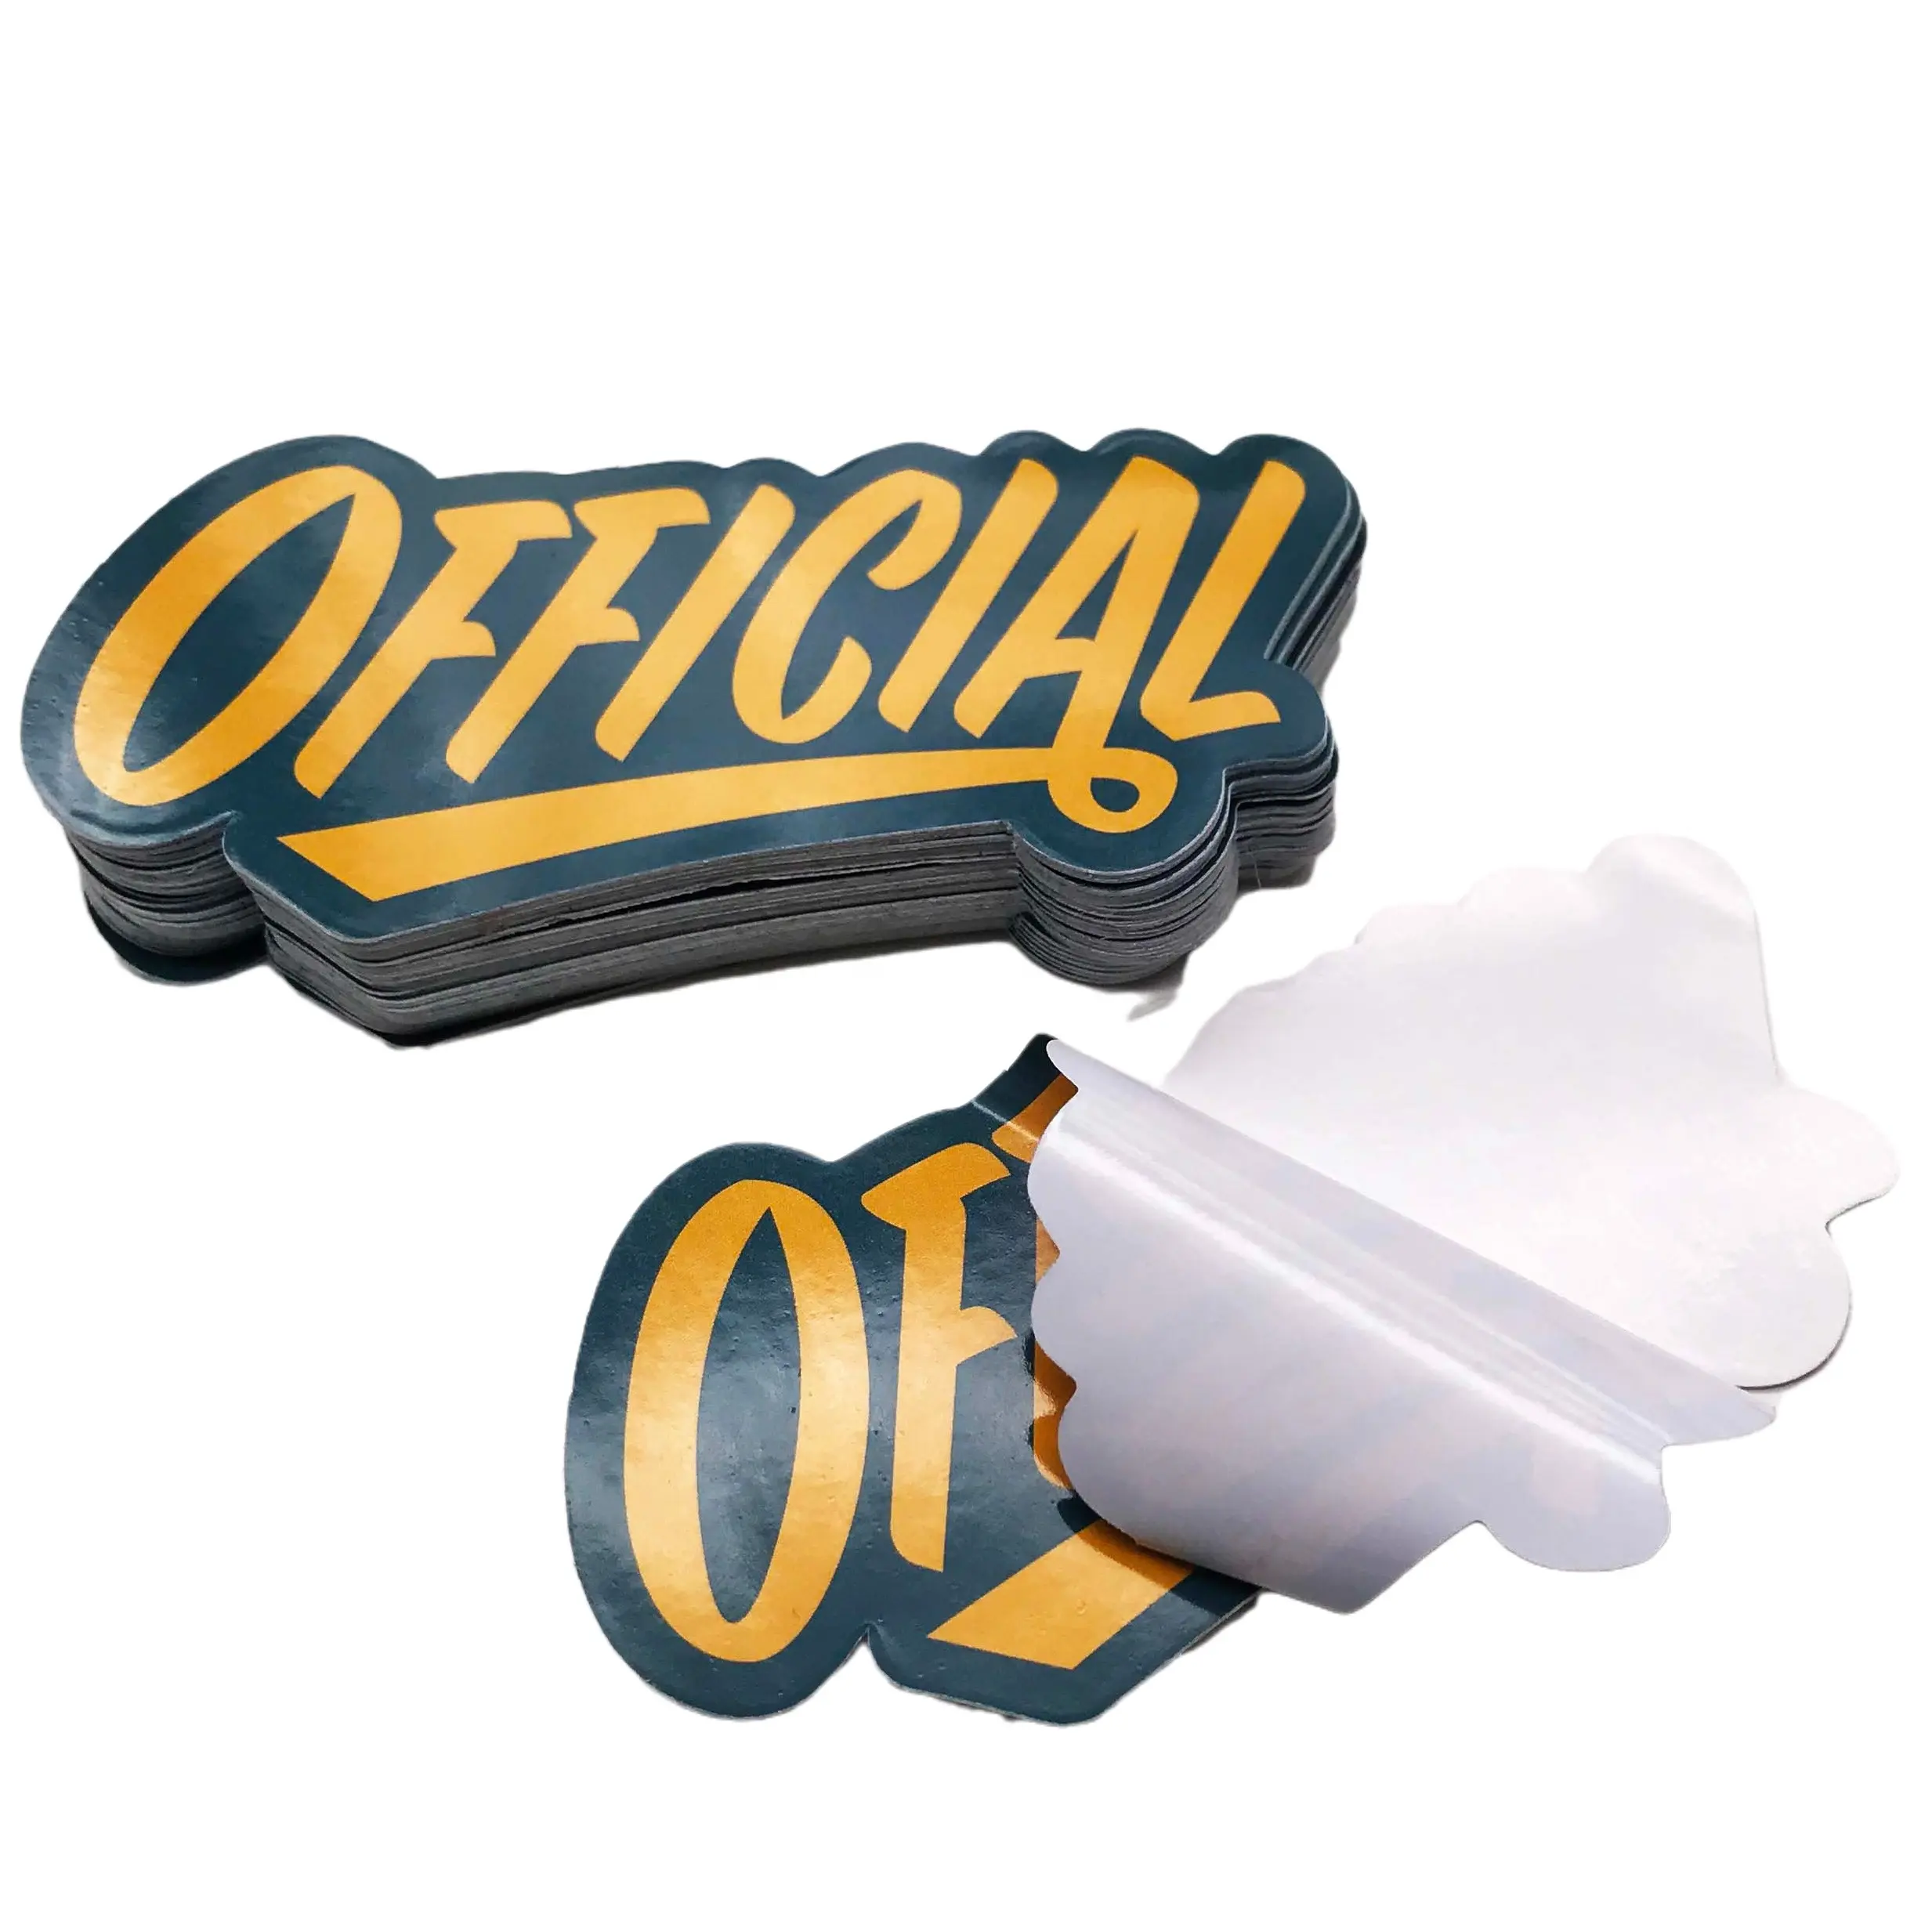 Personalizado de impresión de la etiqueta engomada de vinilo troquelado etiqueta engomada del logotipo